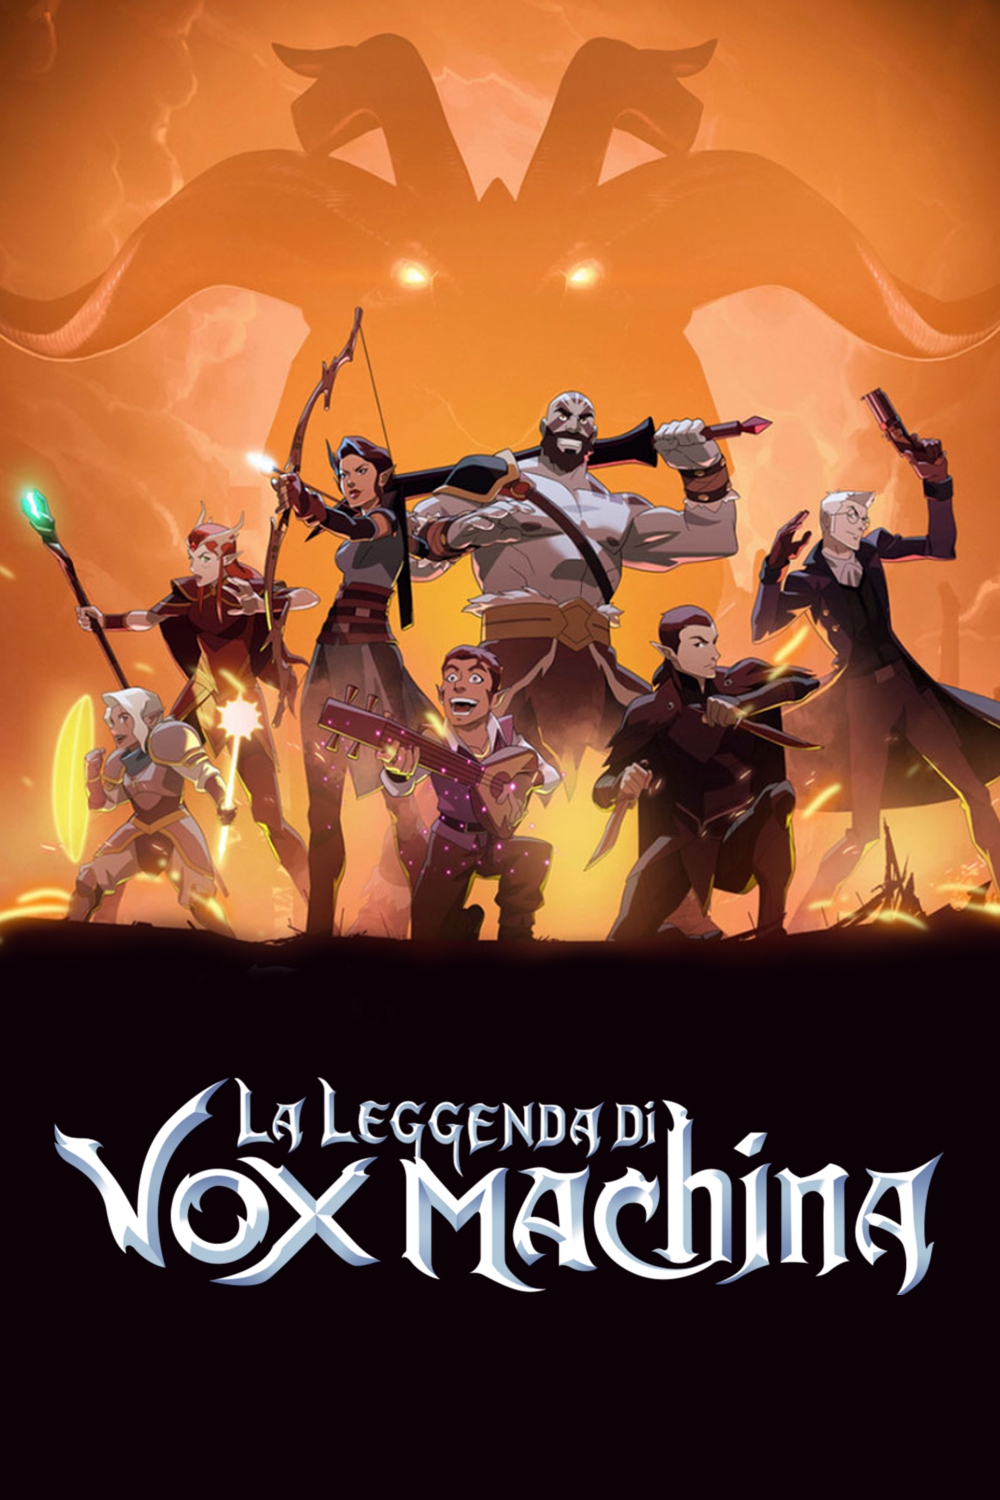 La leggenda di Vox Machina